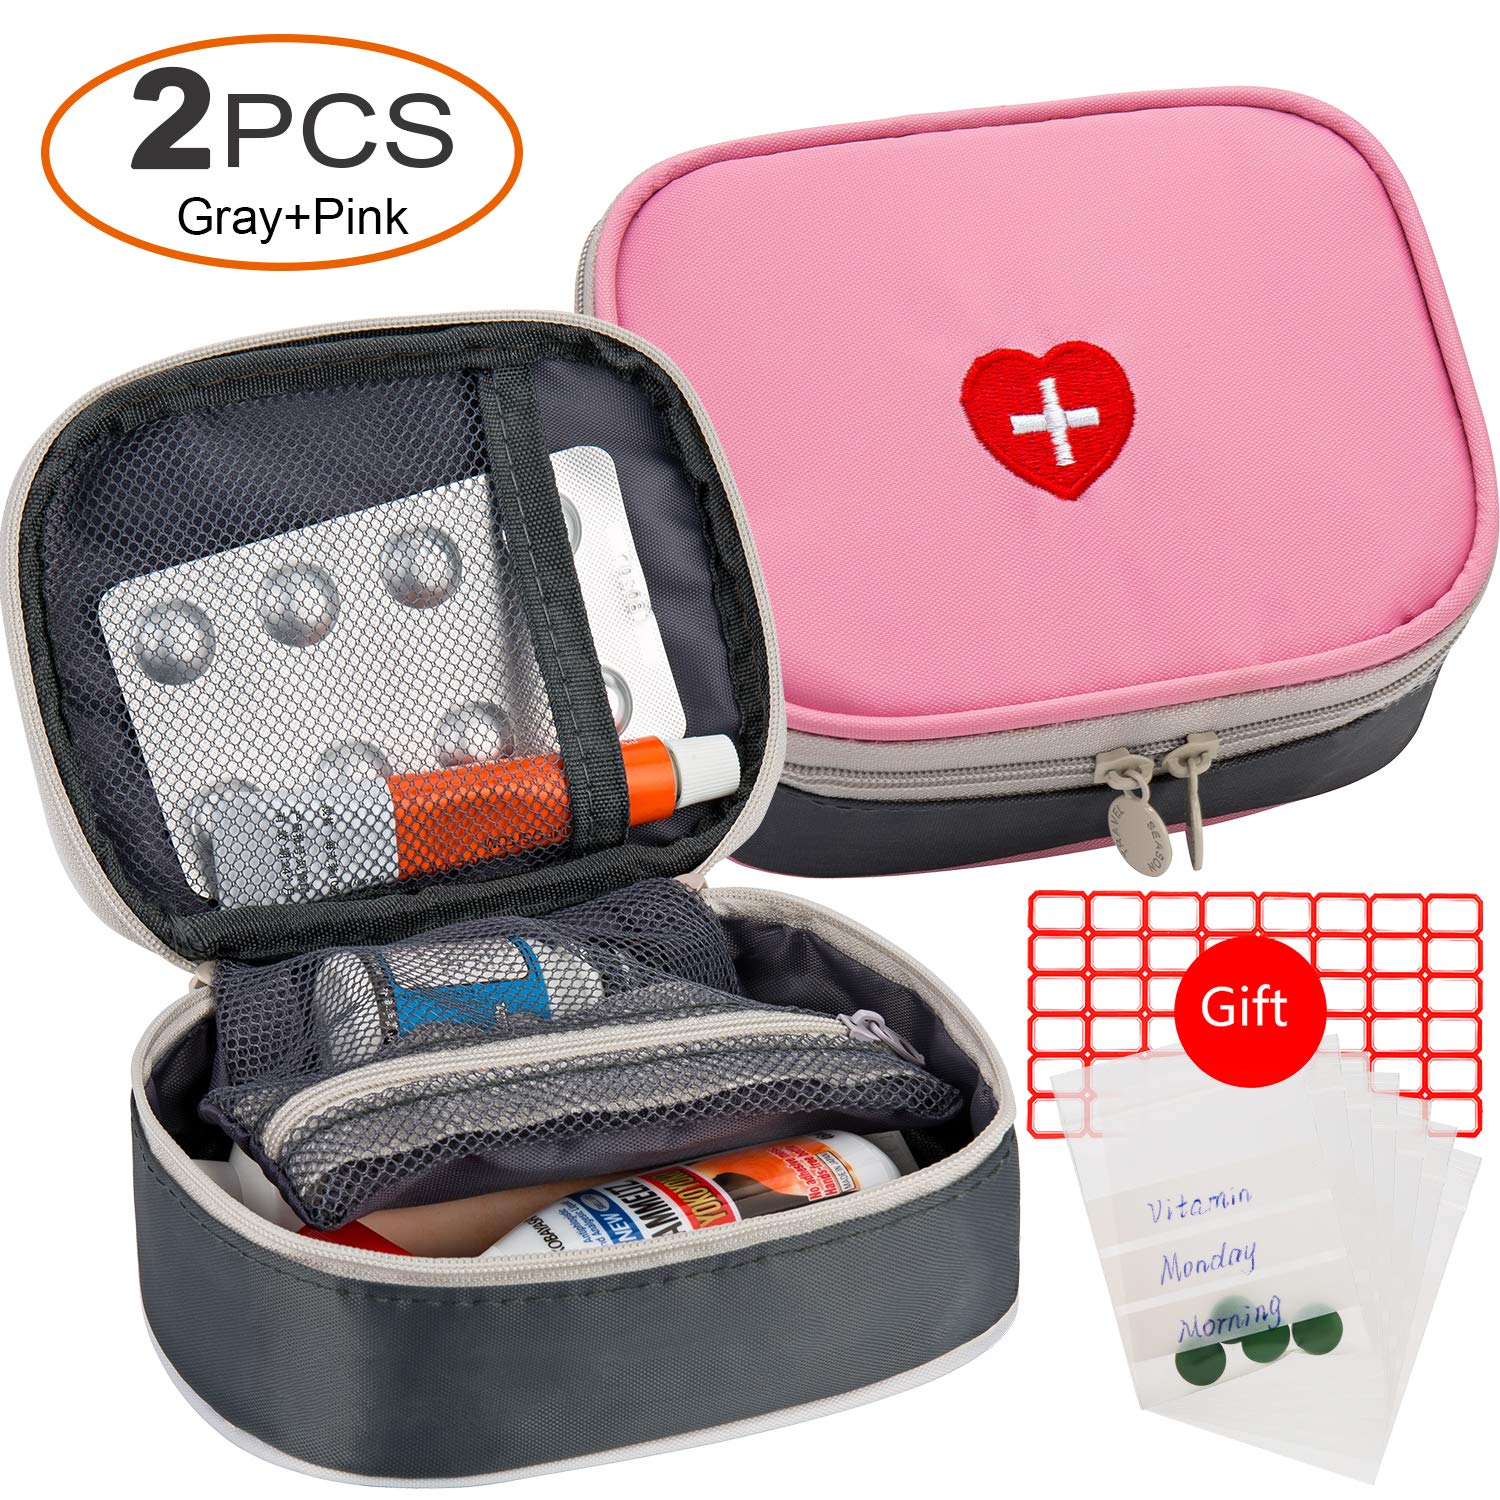 2pcs Portable Mini First Aid Kit